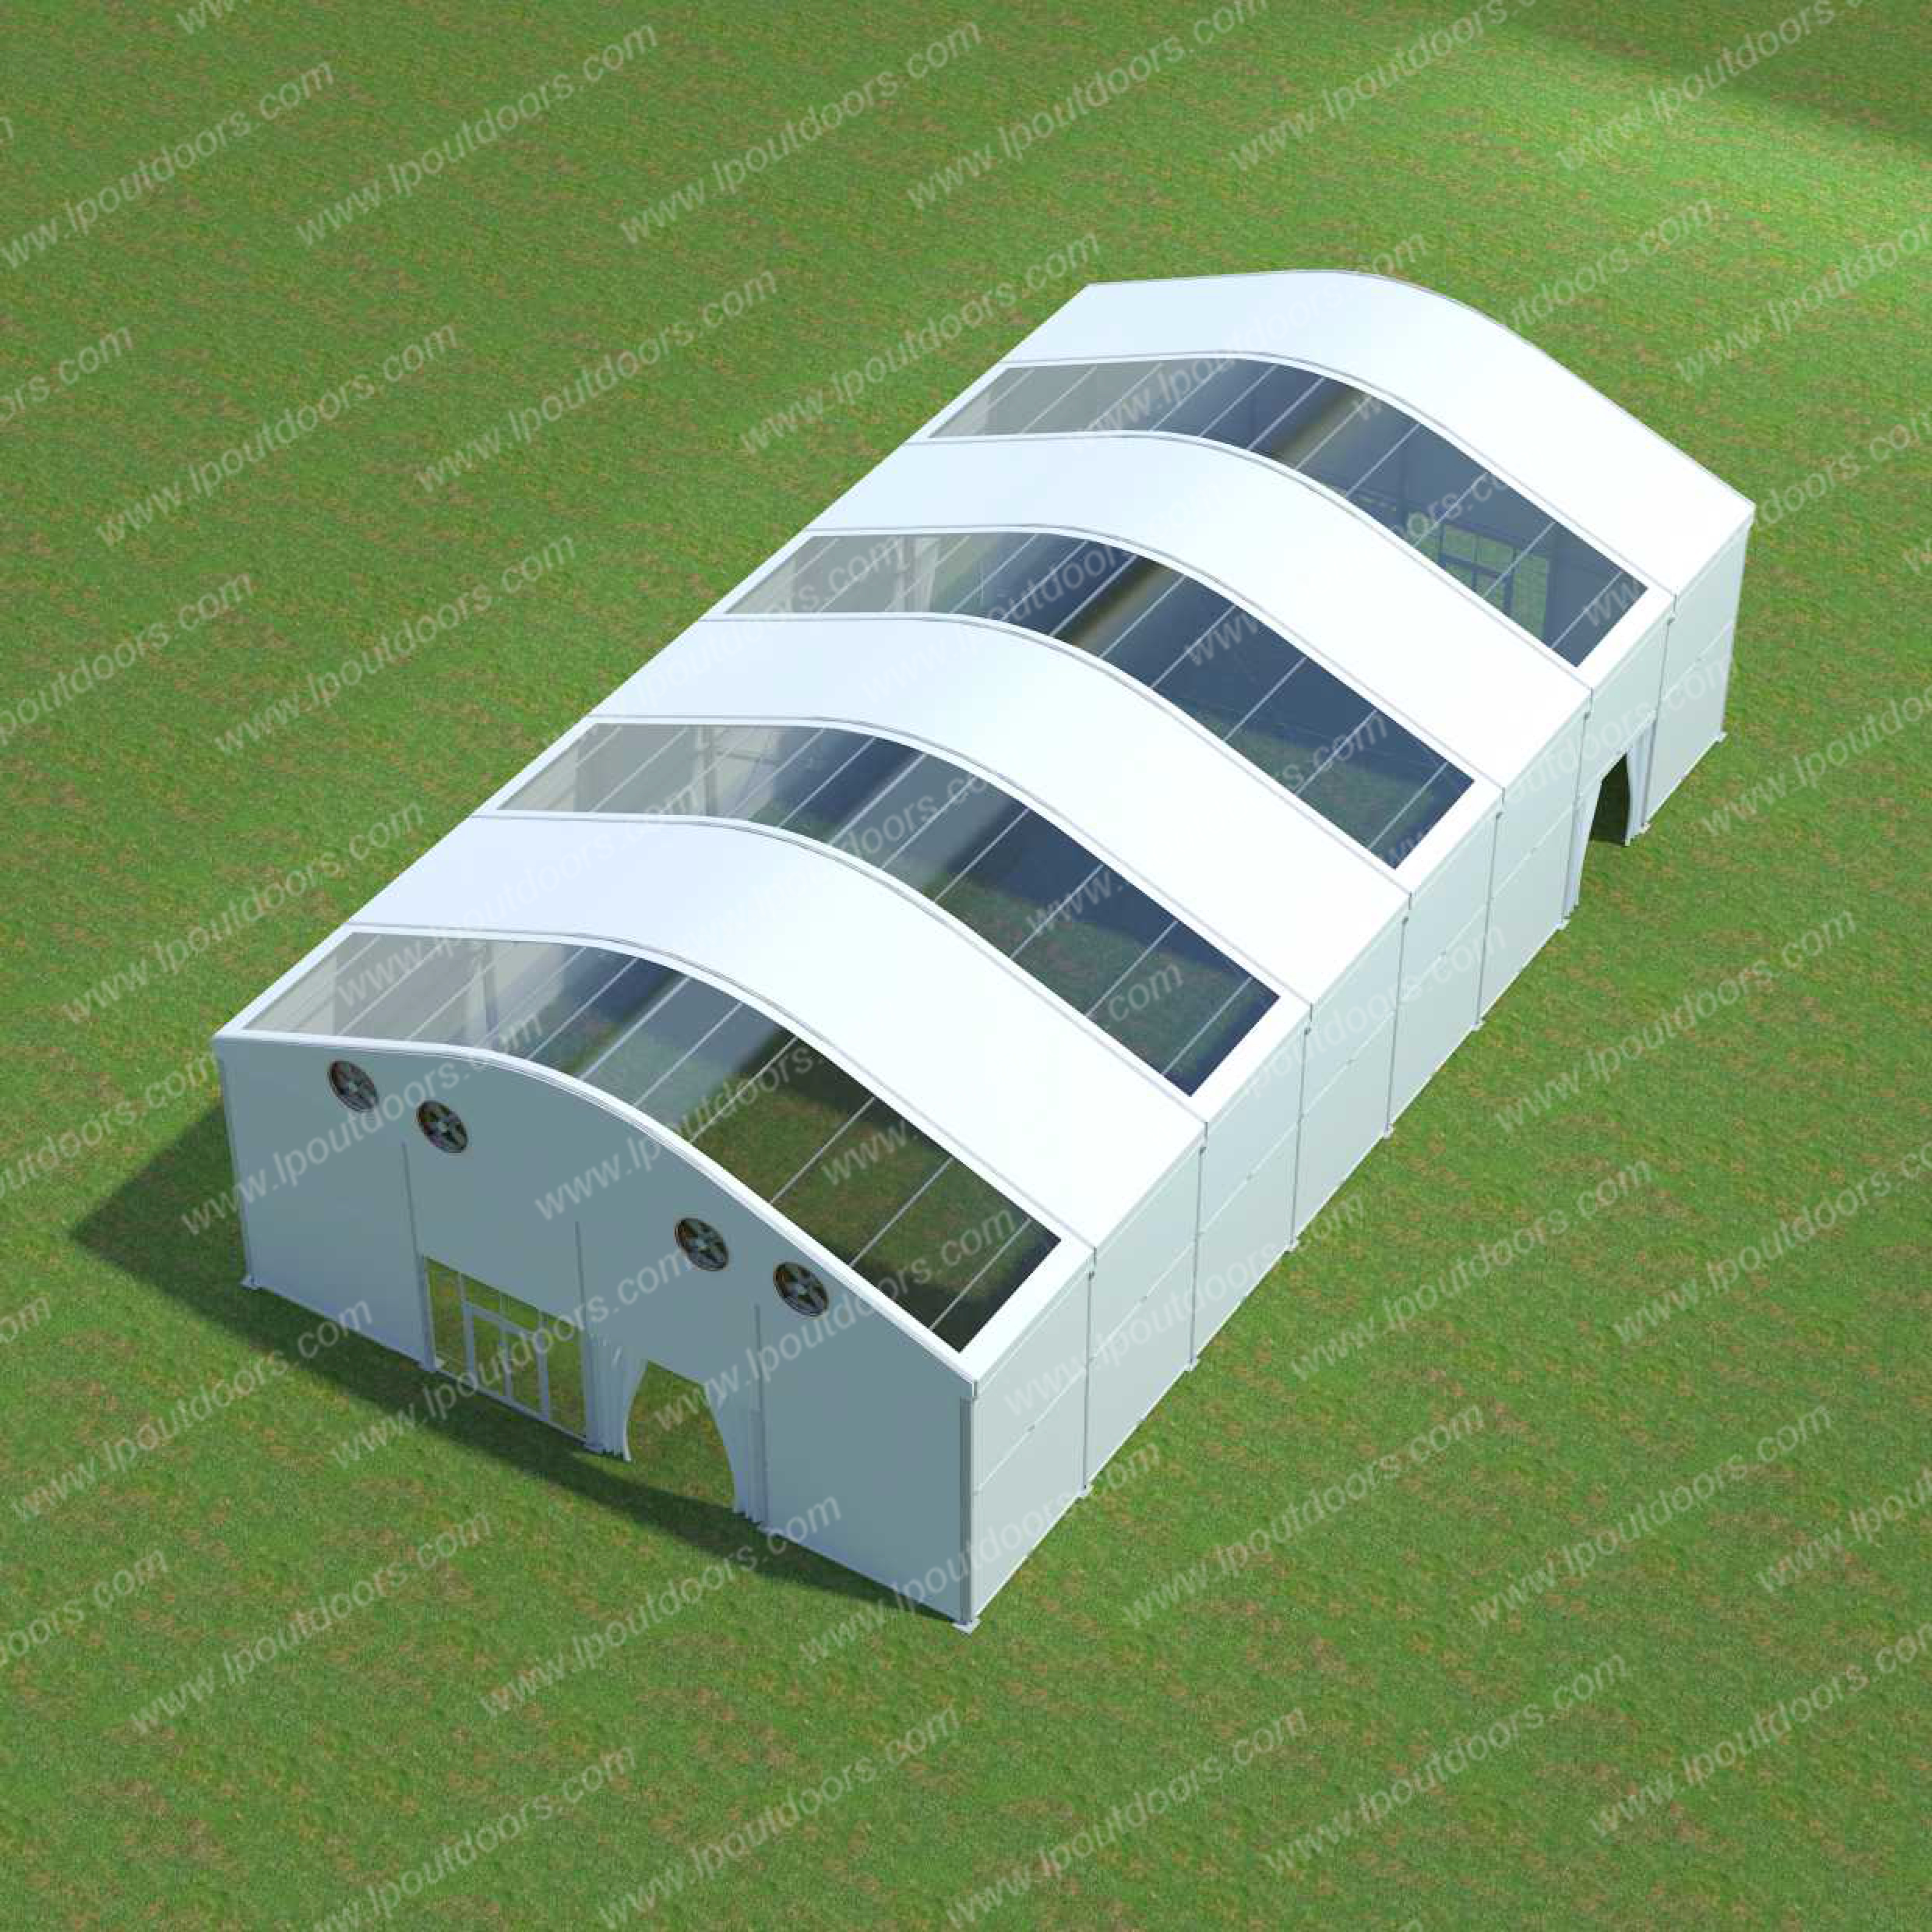 specification of 21m arcum tent